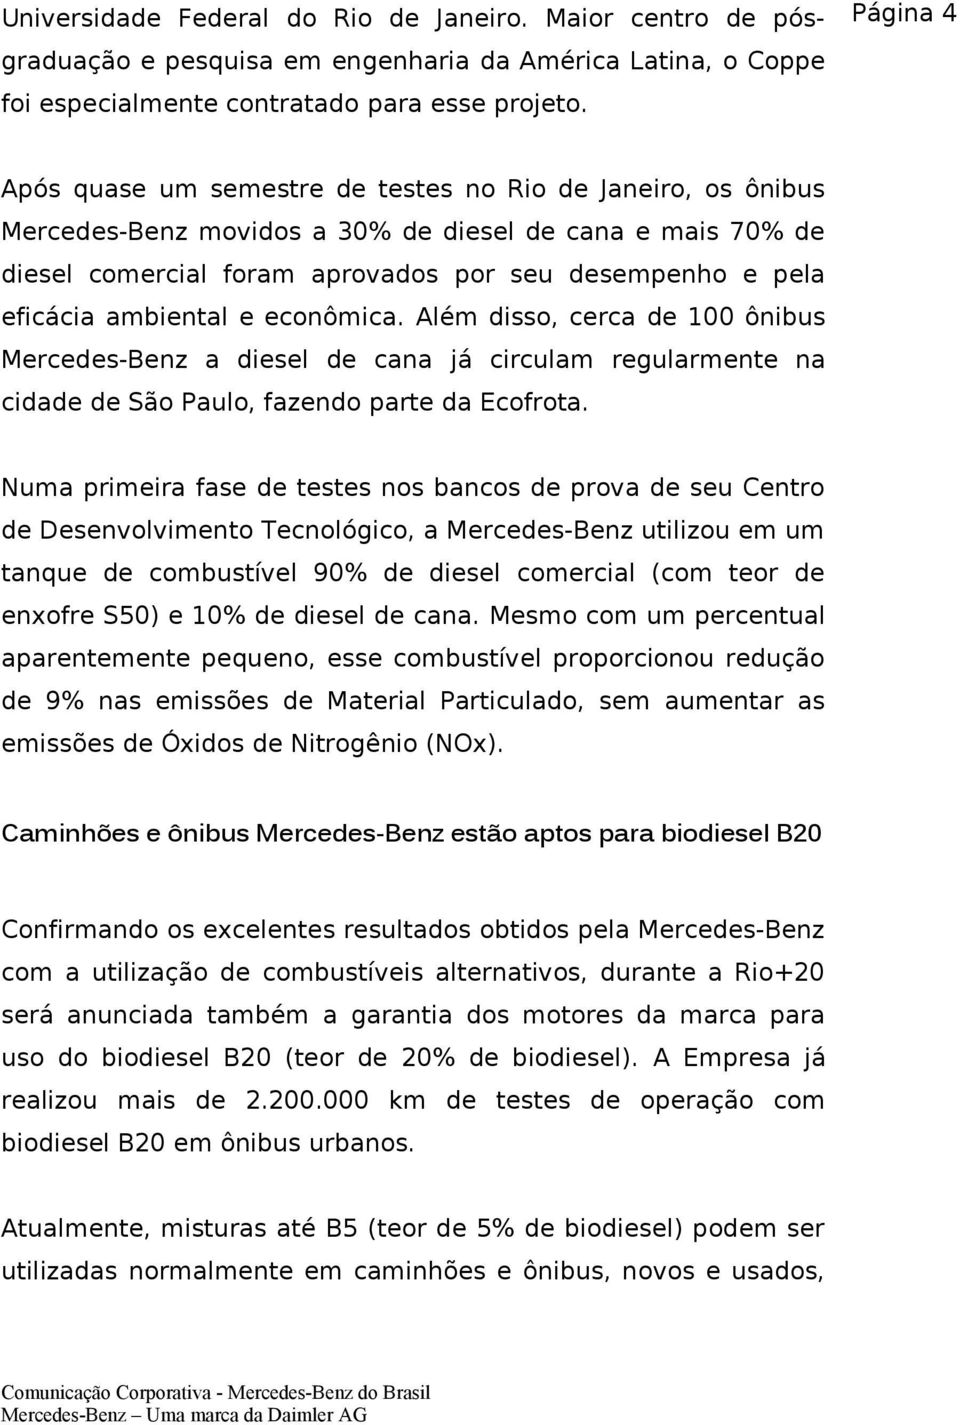 ambiental e econômica. Além disso, cerca de 100 ônibus Mercedes-Benz a diesel de cana já circulam regularmente na cidade de São Paulo, fazendo parte da Ecofrota.